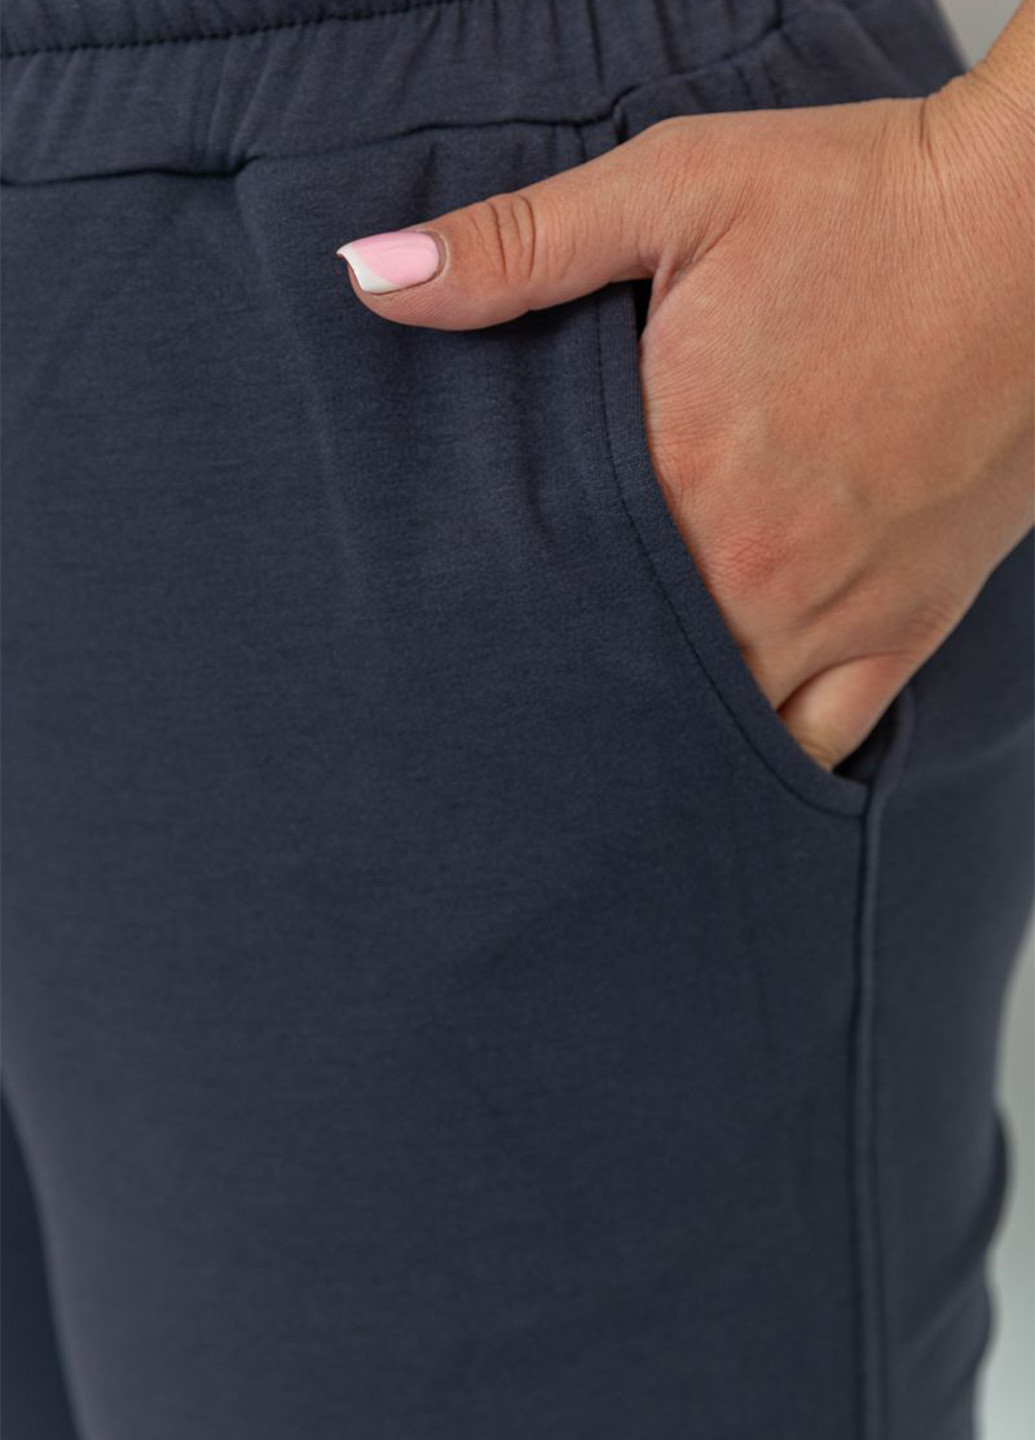 Темно-серые спортивные демисезонные джоггеры брюки Ager